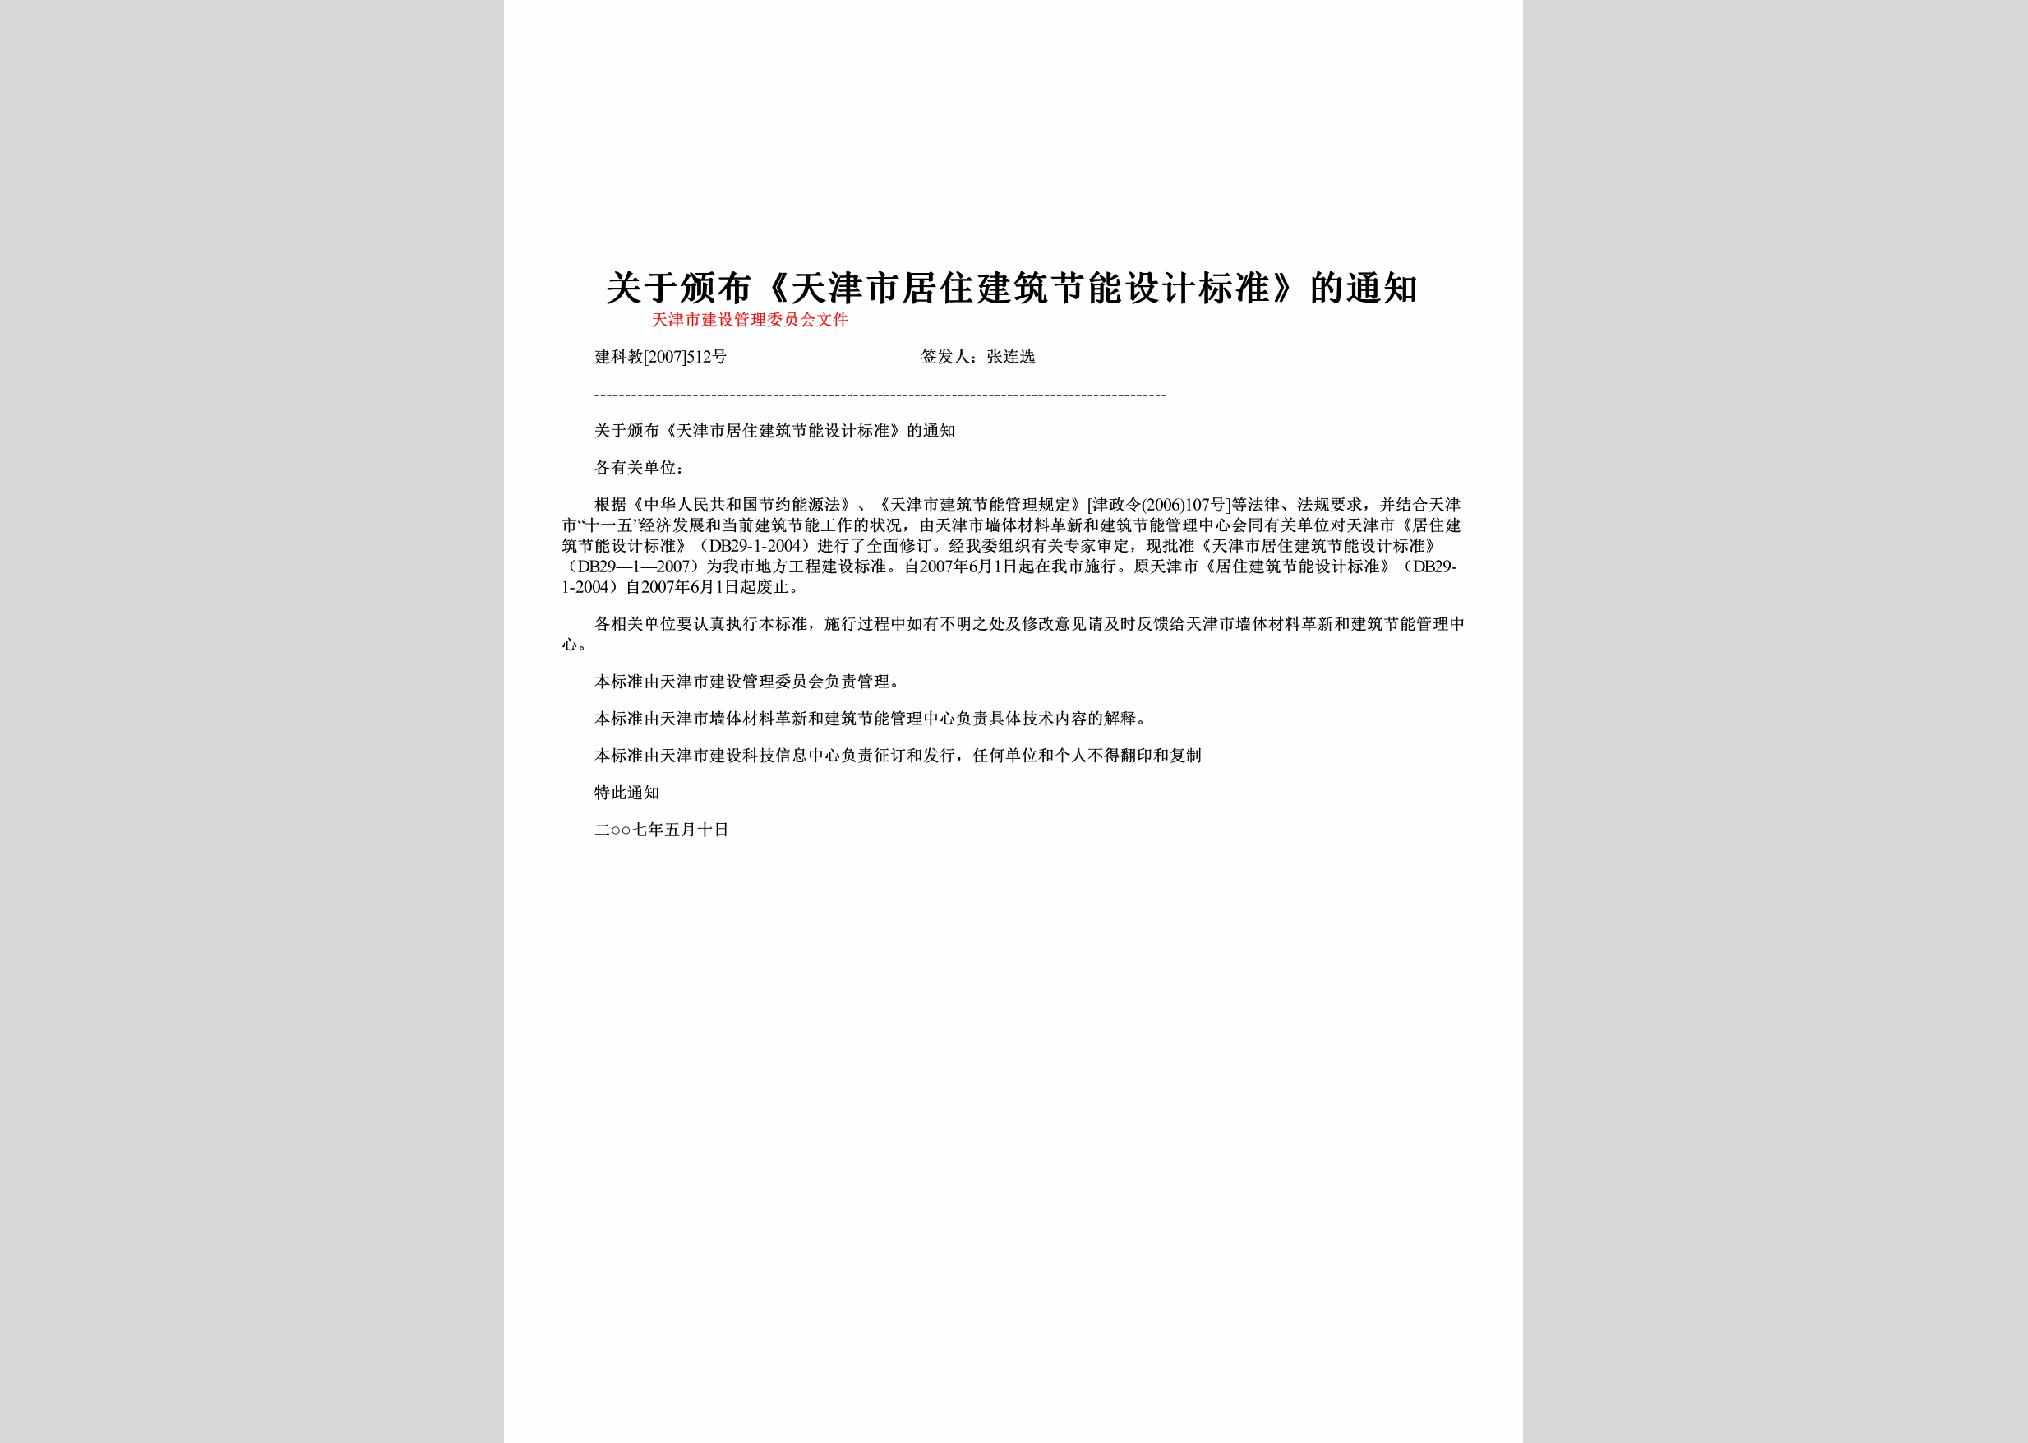 建科教[2007]512号：关于颁布《天津市居住建筑节能设计标准》的通知